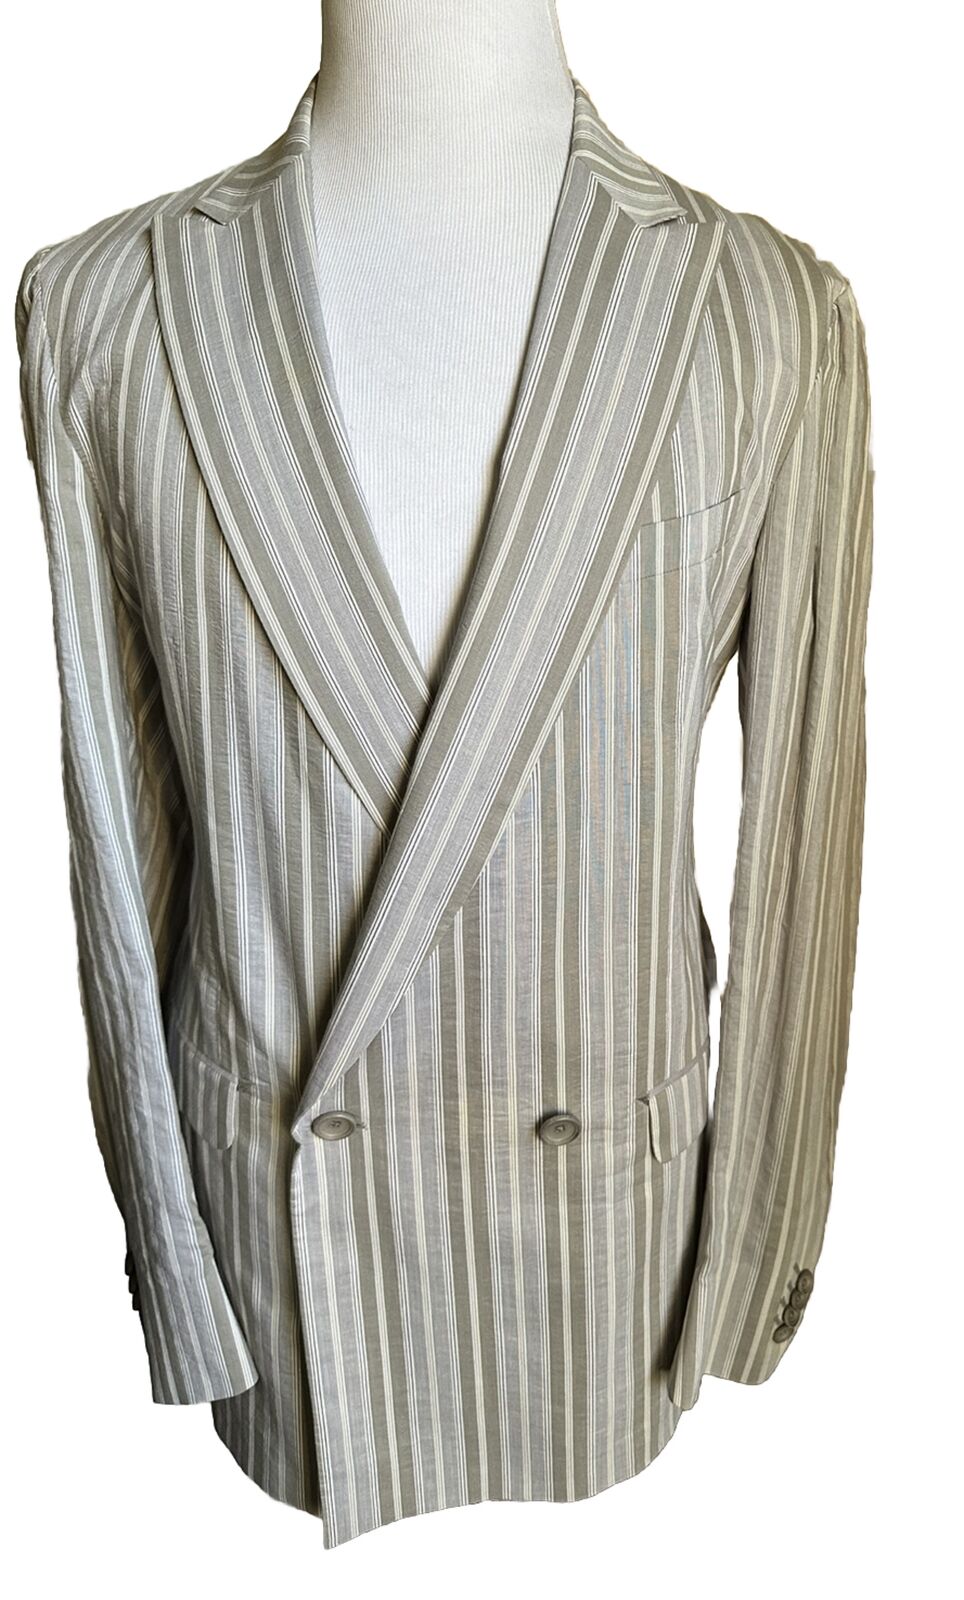 New $905 Z Zegna Sport Coat Blazer Jacket Gray Striped 44 US/56 Eu